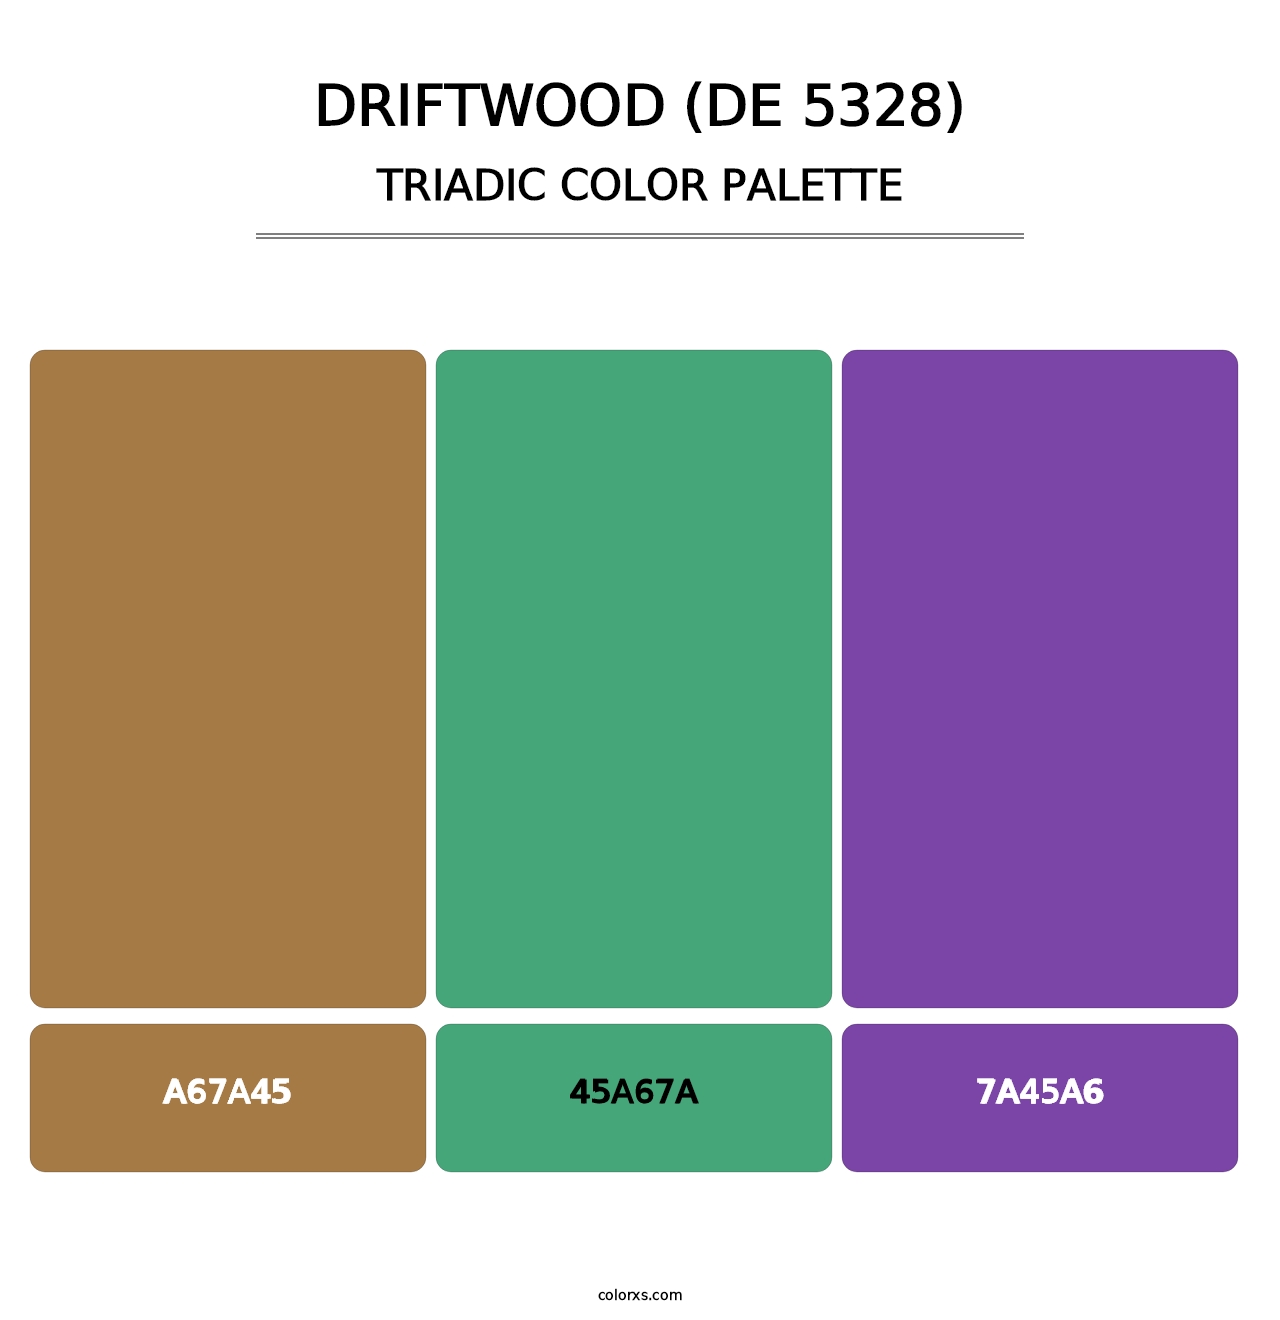 Driftwood (DE 5328) - Triadic Color Palette